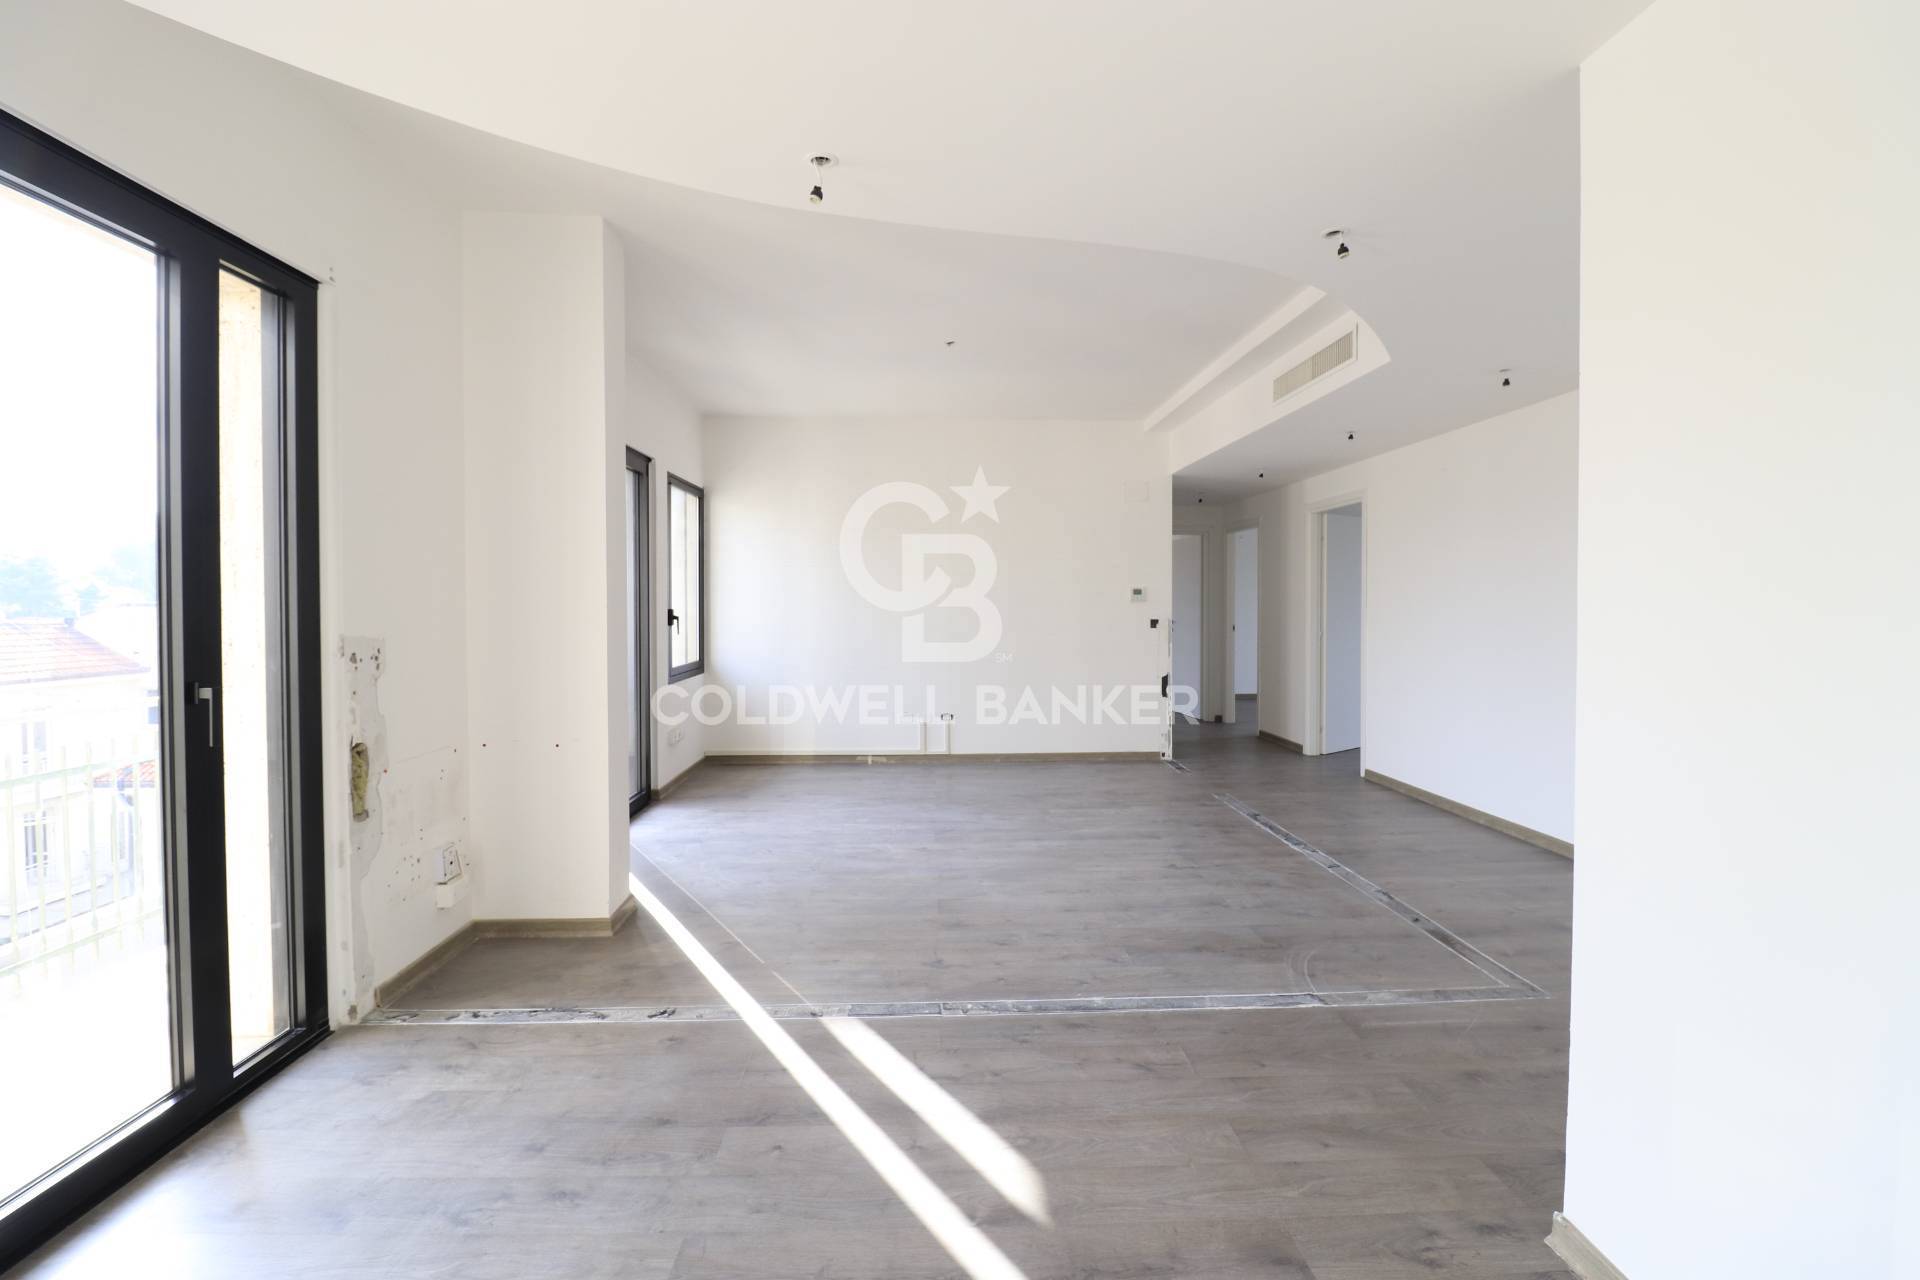 Appartamento in vendita a Riccione, 4 locali, zona Località: CENTRO, prezzo € 690.000 | PortaleAgenzieImmobiliari.it